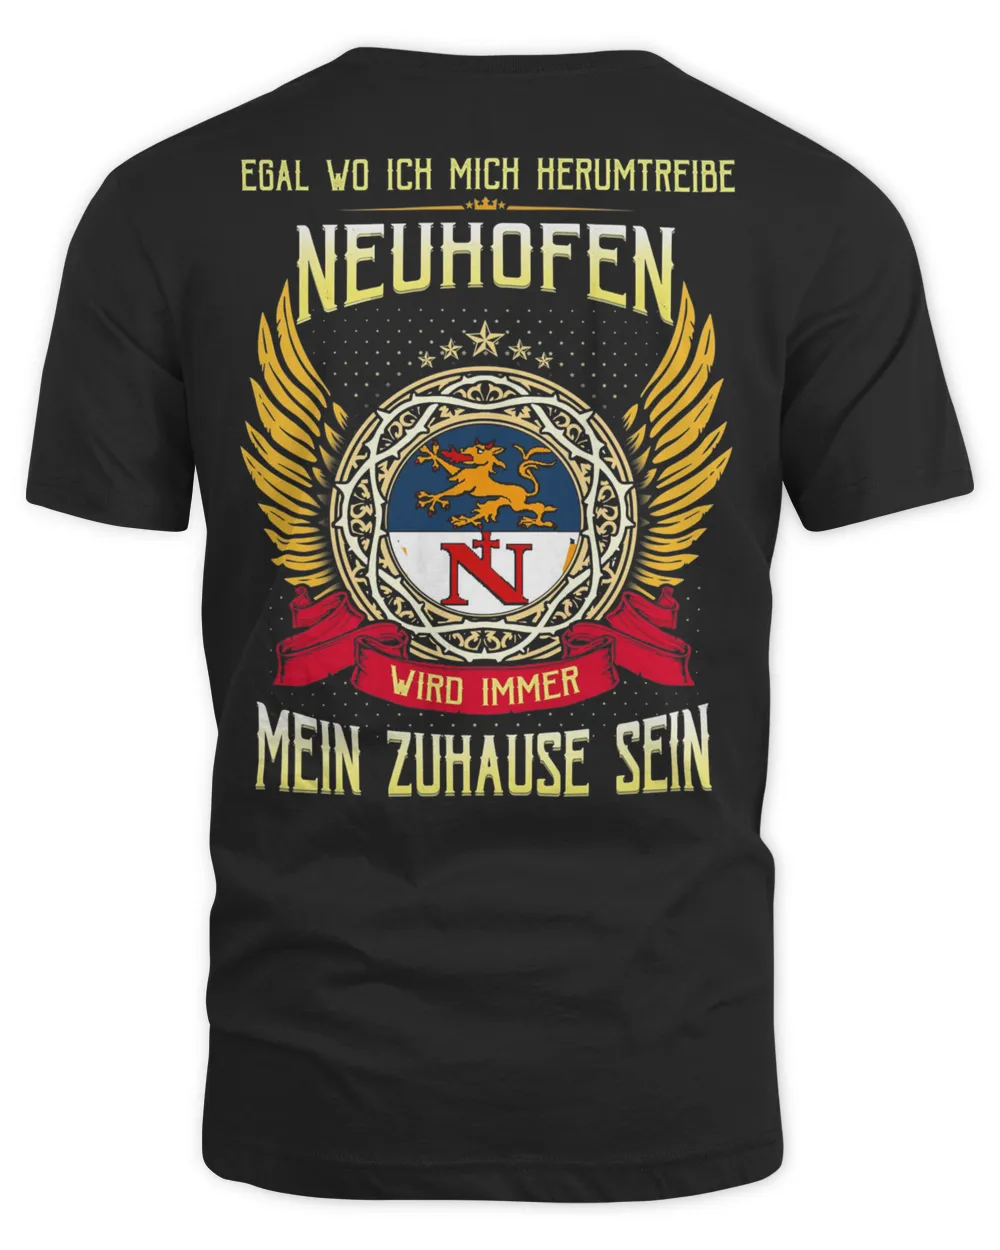 Official Egal Wo Ich Mich Herumtreibe Neuhofen Wird Immer Mein Zuhause Sein Shirt